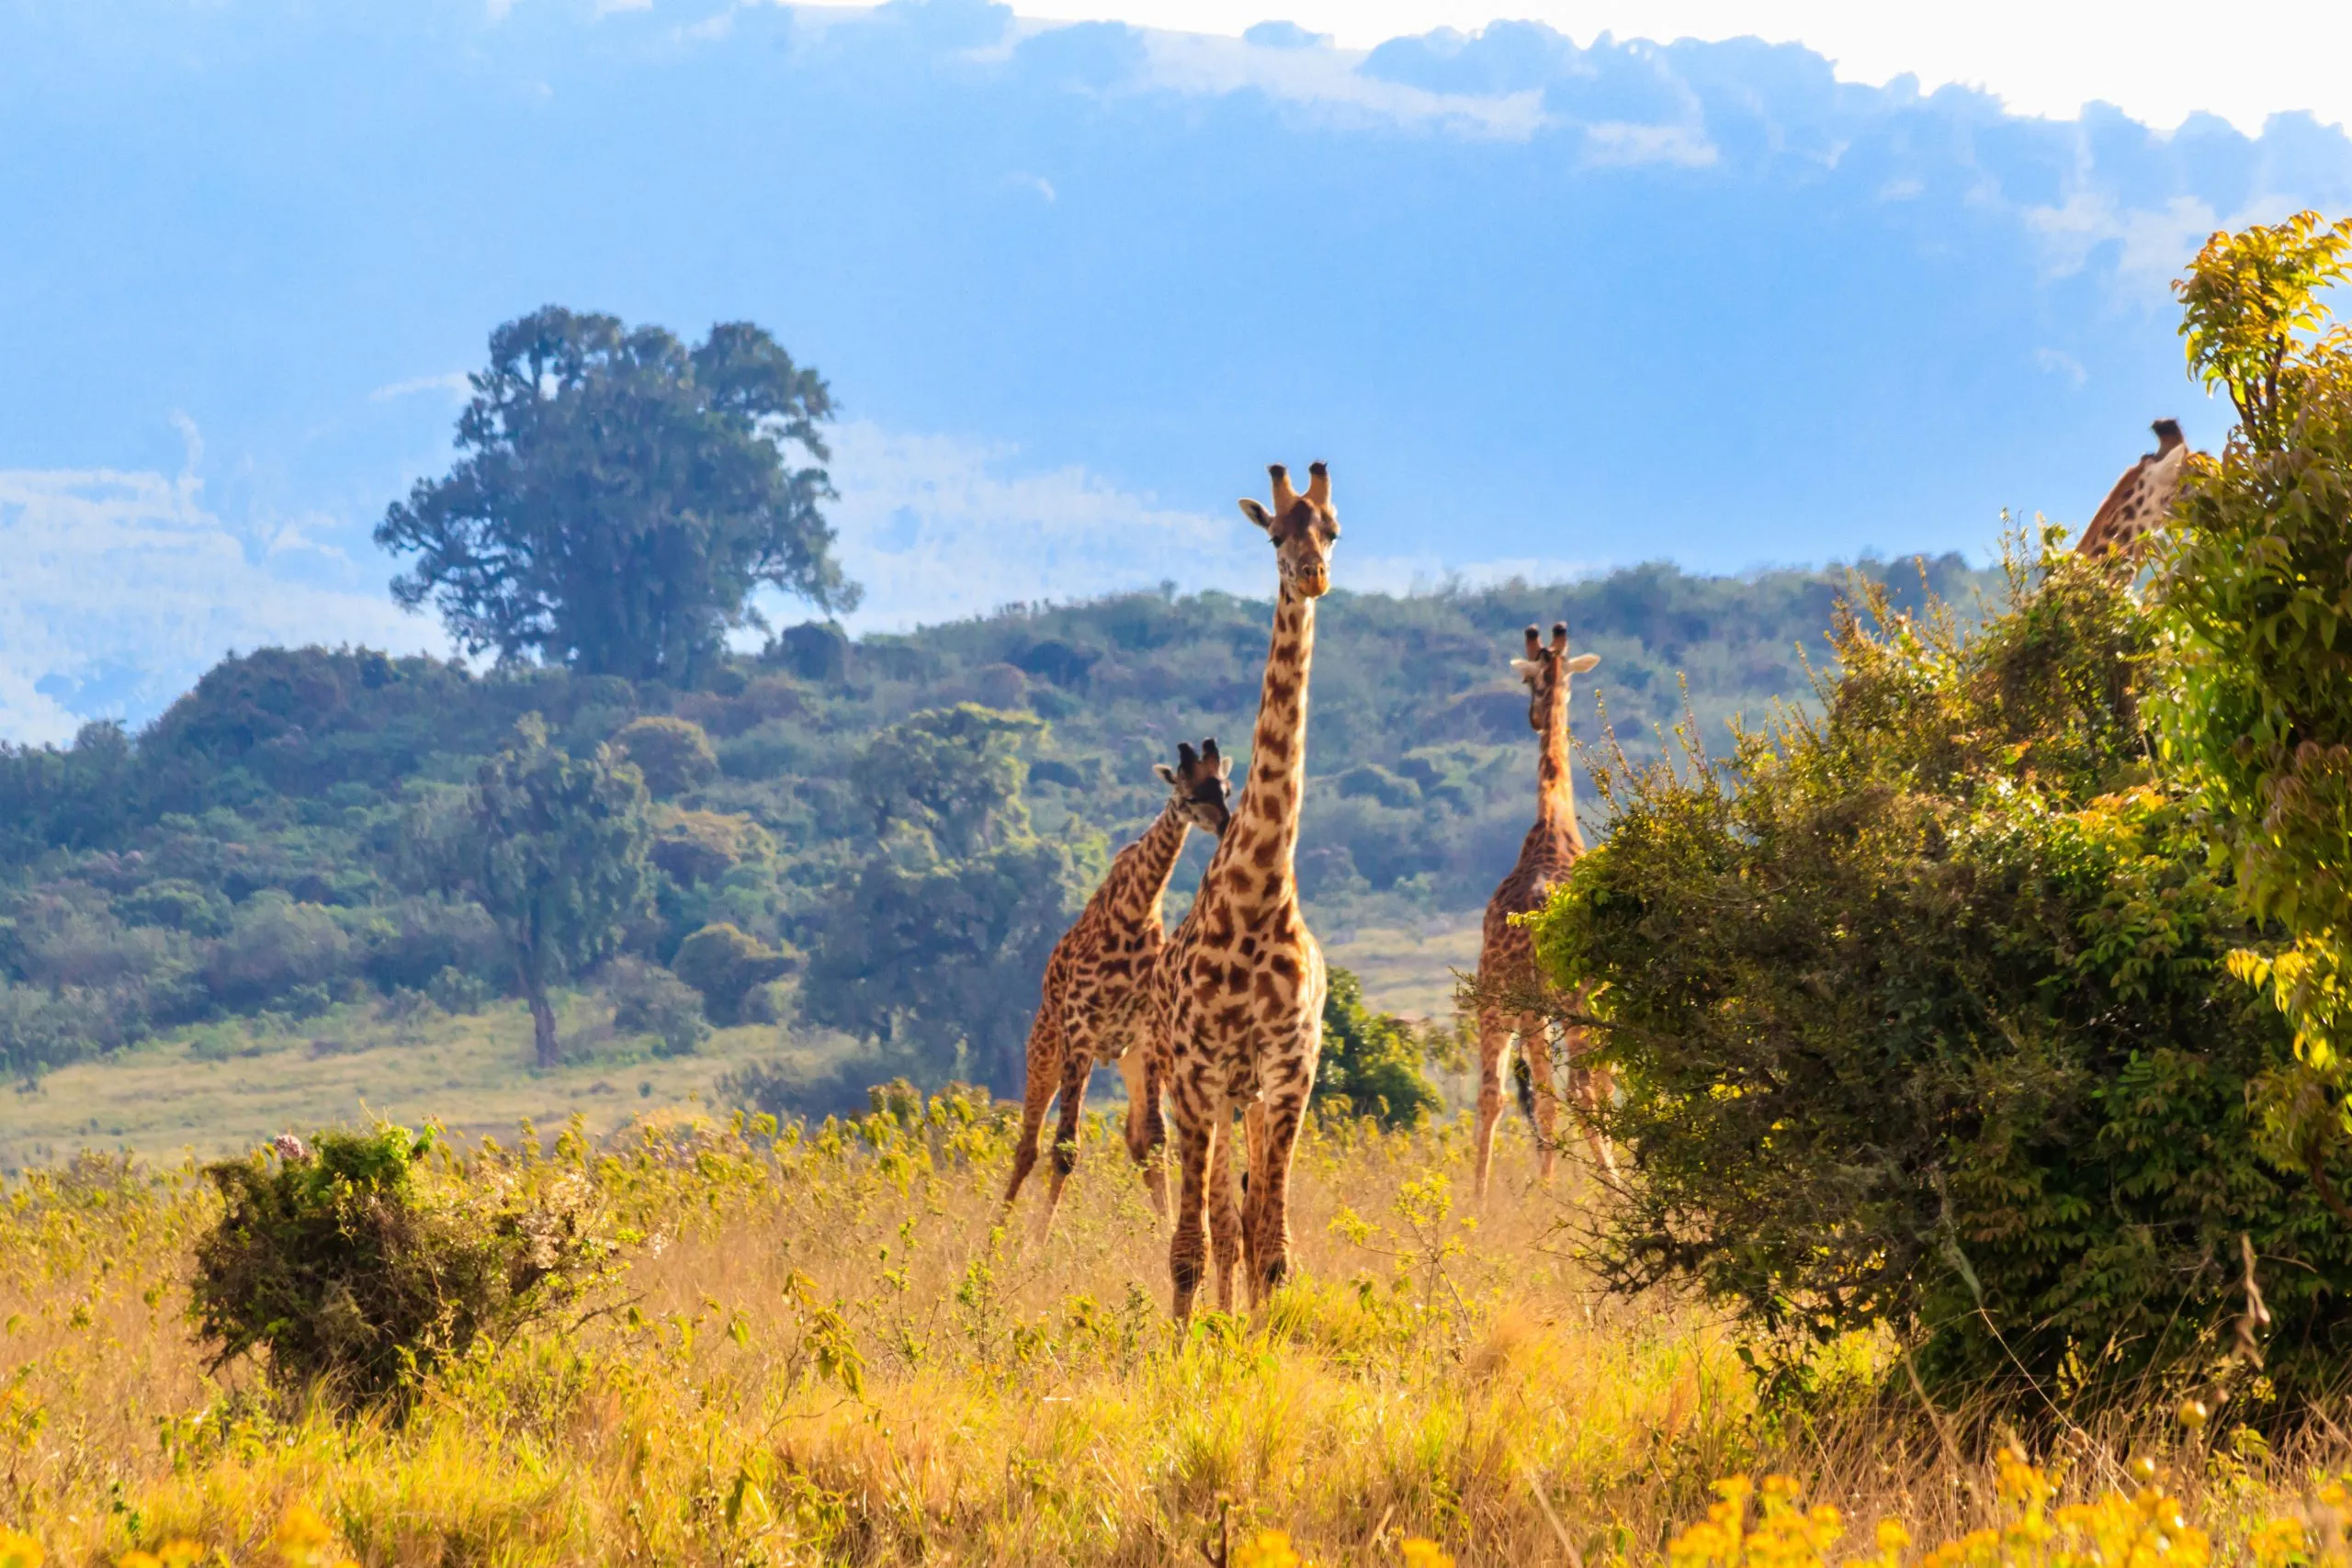 Grupp av giraffer på promenad i Ngorongoro Conservation Area i Tanzania. Afrikas vilda djur